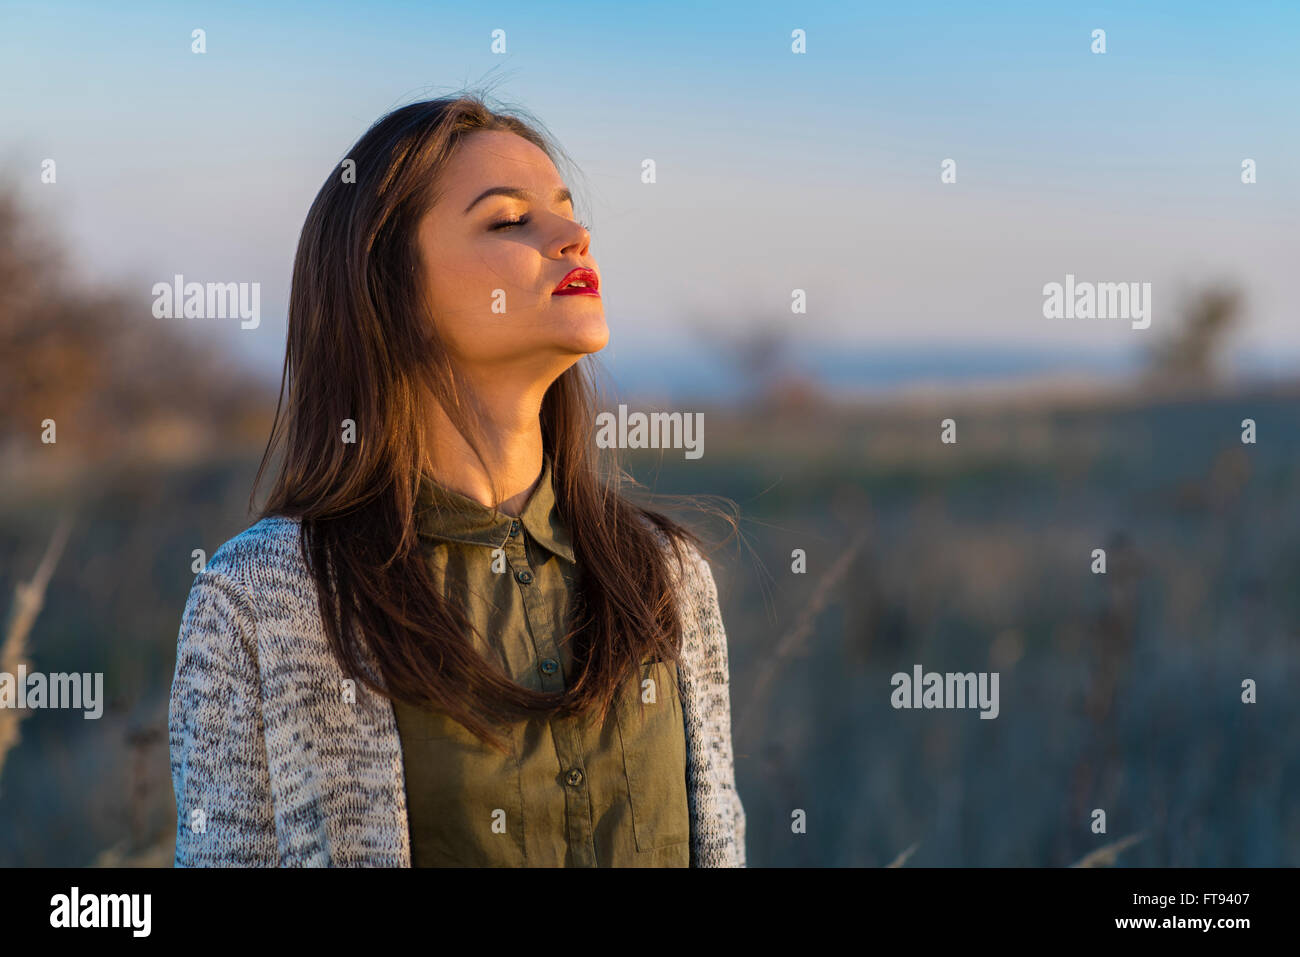 Genießen Sonne, vor dem Winter. Eine schöne Teenager-Mädchen in einem Feld bei herbstlichen Sonnenuntergang stehen, genießen die letzten Sonnentage vor dem Winter. Stockfoto